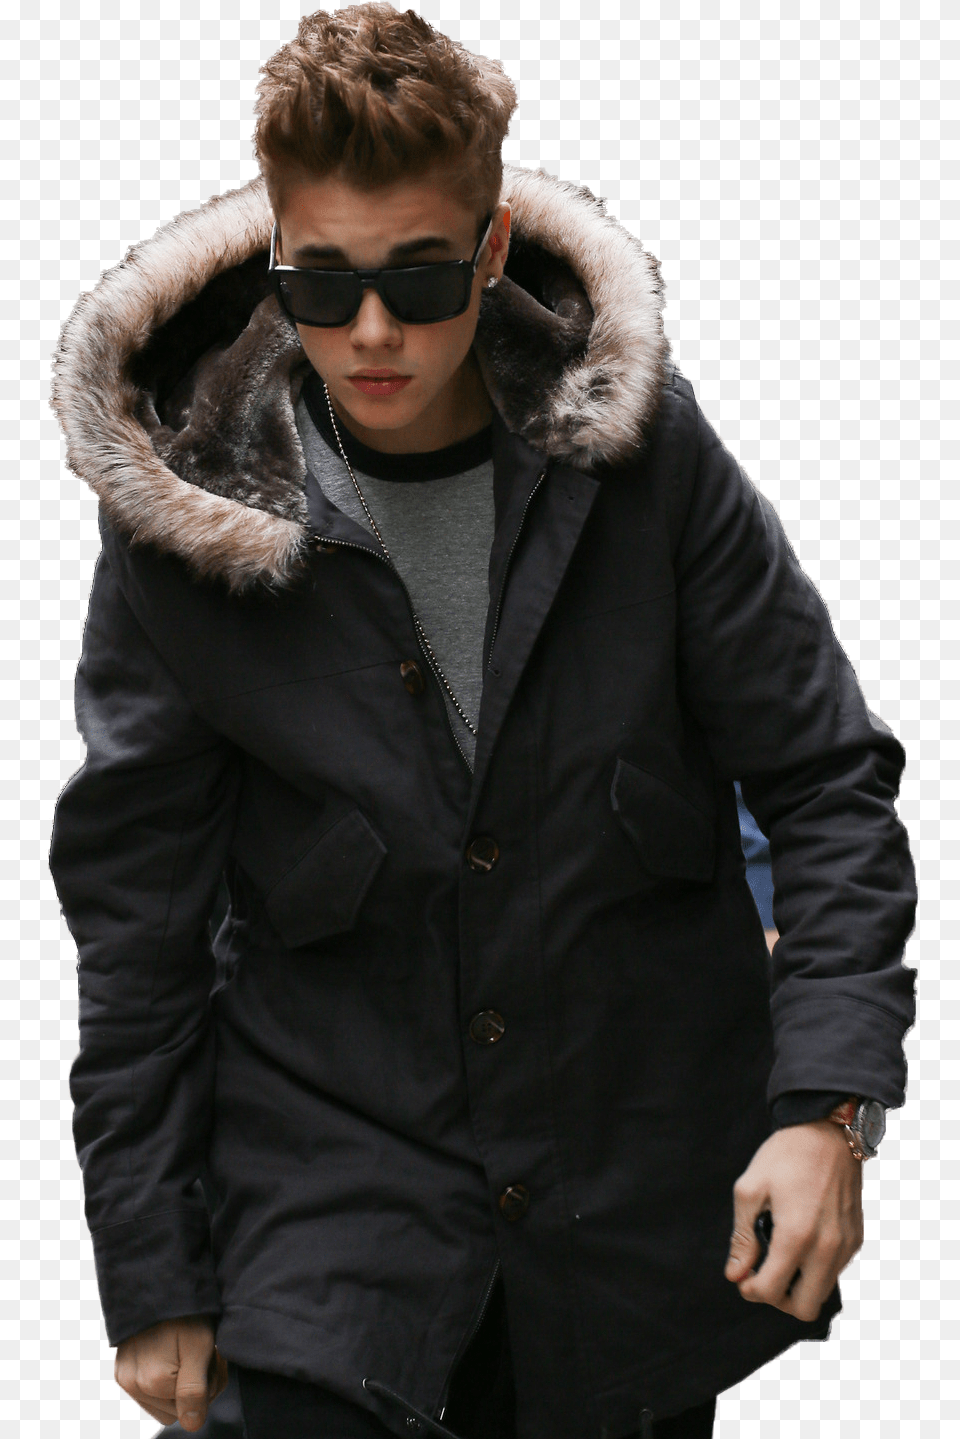 Ambedkar Potho Download Justin Bieber Fur Jacket, Accessories, Coat, Clothing, Sunglasses Free Transparent Png